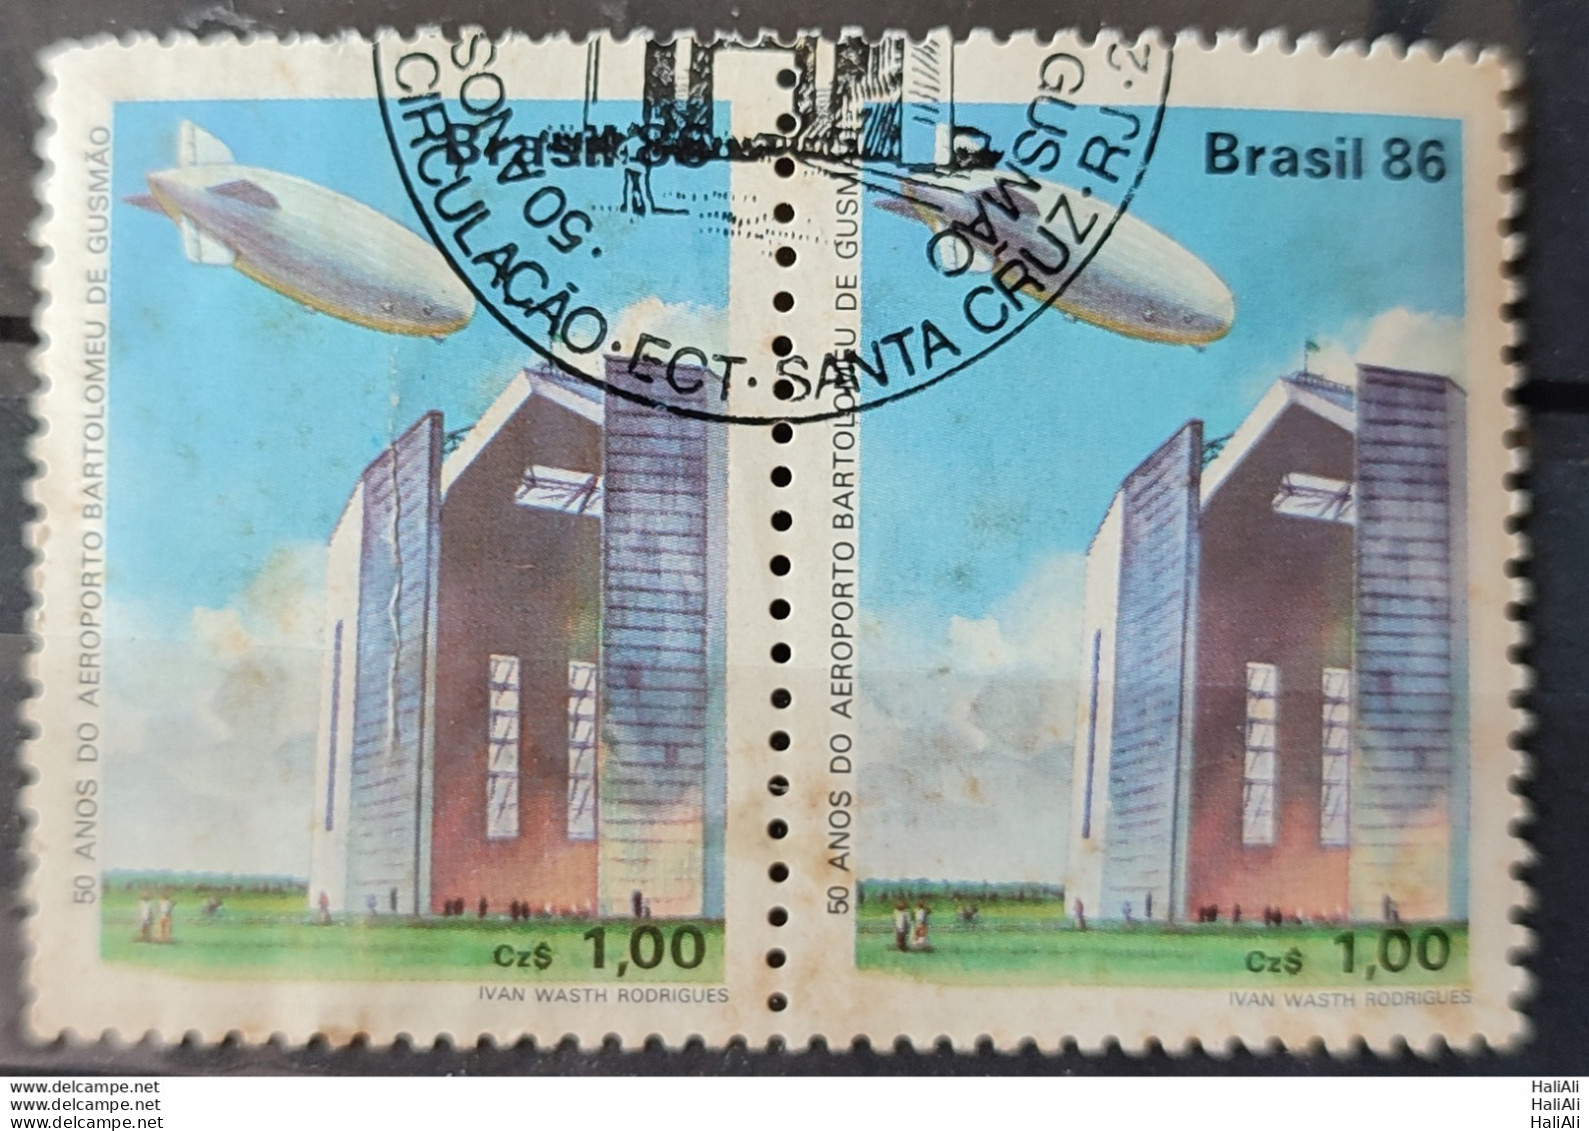 C 1541 Brazil Stamp 50 Years Airport Bartolomeu De Gusmao Balloon Hangar 1986 Dupla Circulated 2 - Oblitérés